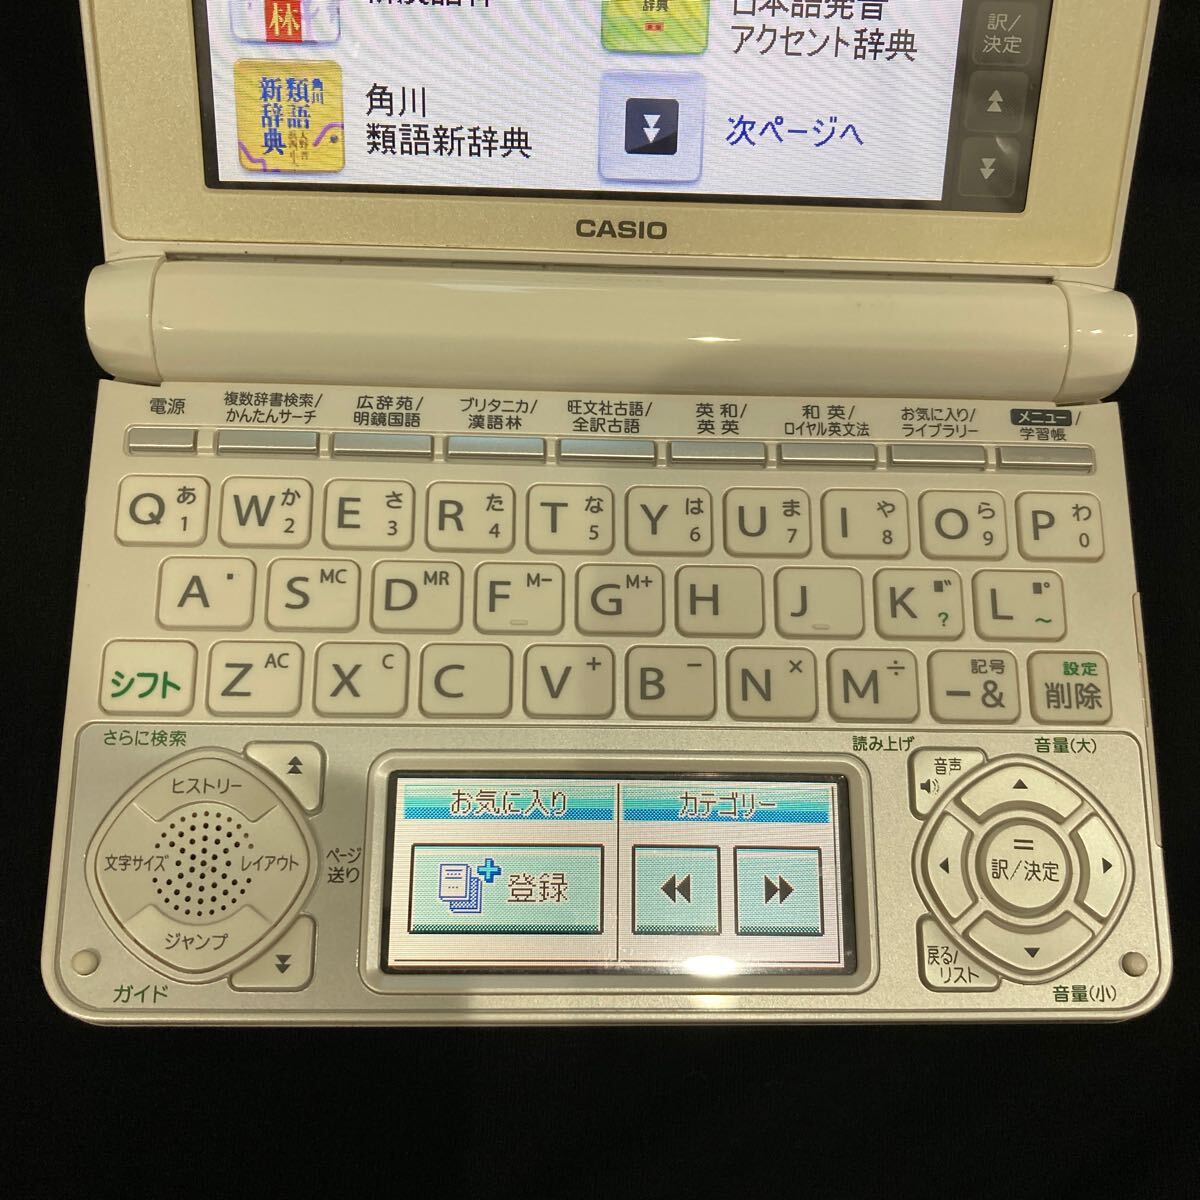 CASIO カシオ 電子辞書 高校生モデル DATAPLUS7 XD-N4700 新学期に1台あると便利 今更聞けないことをの画像3